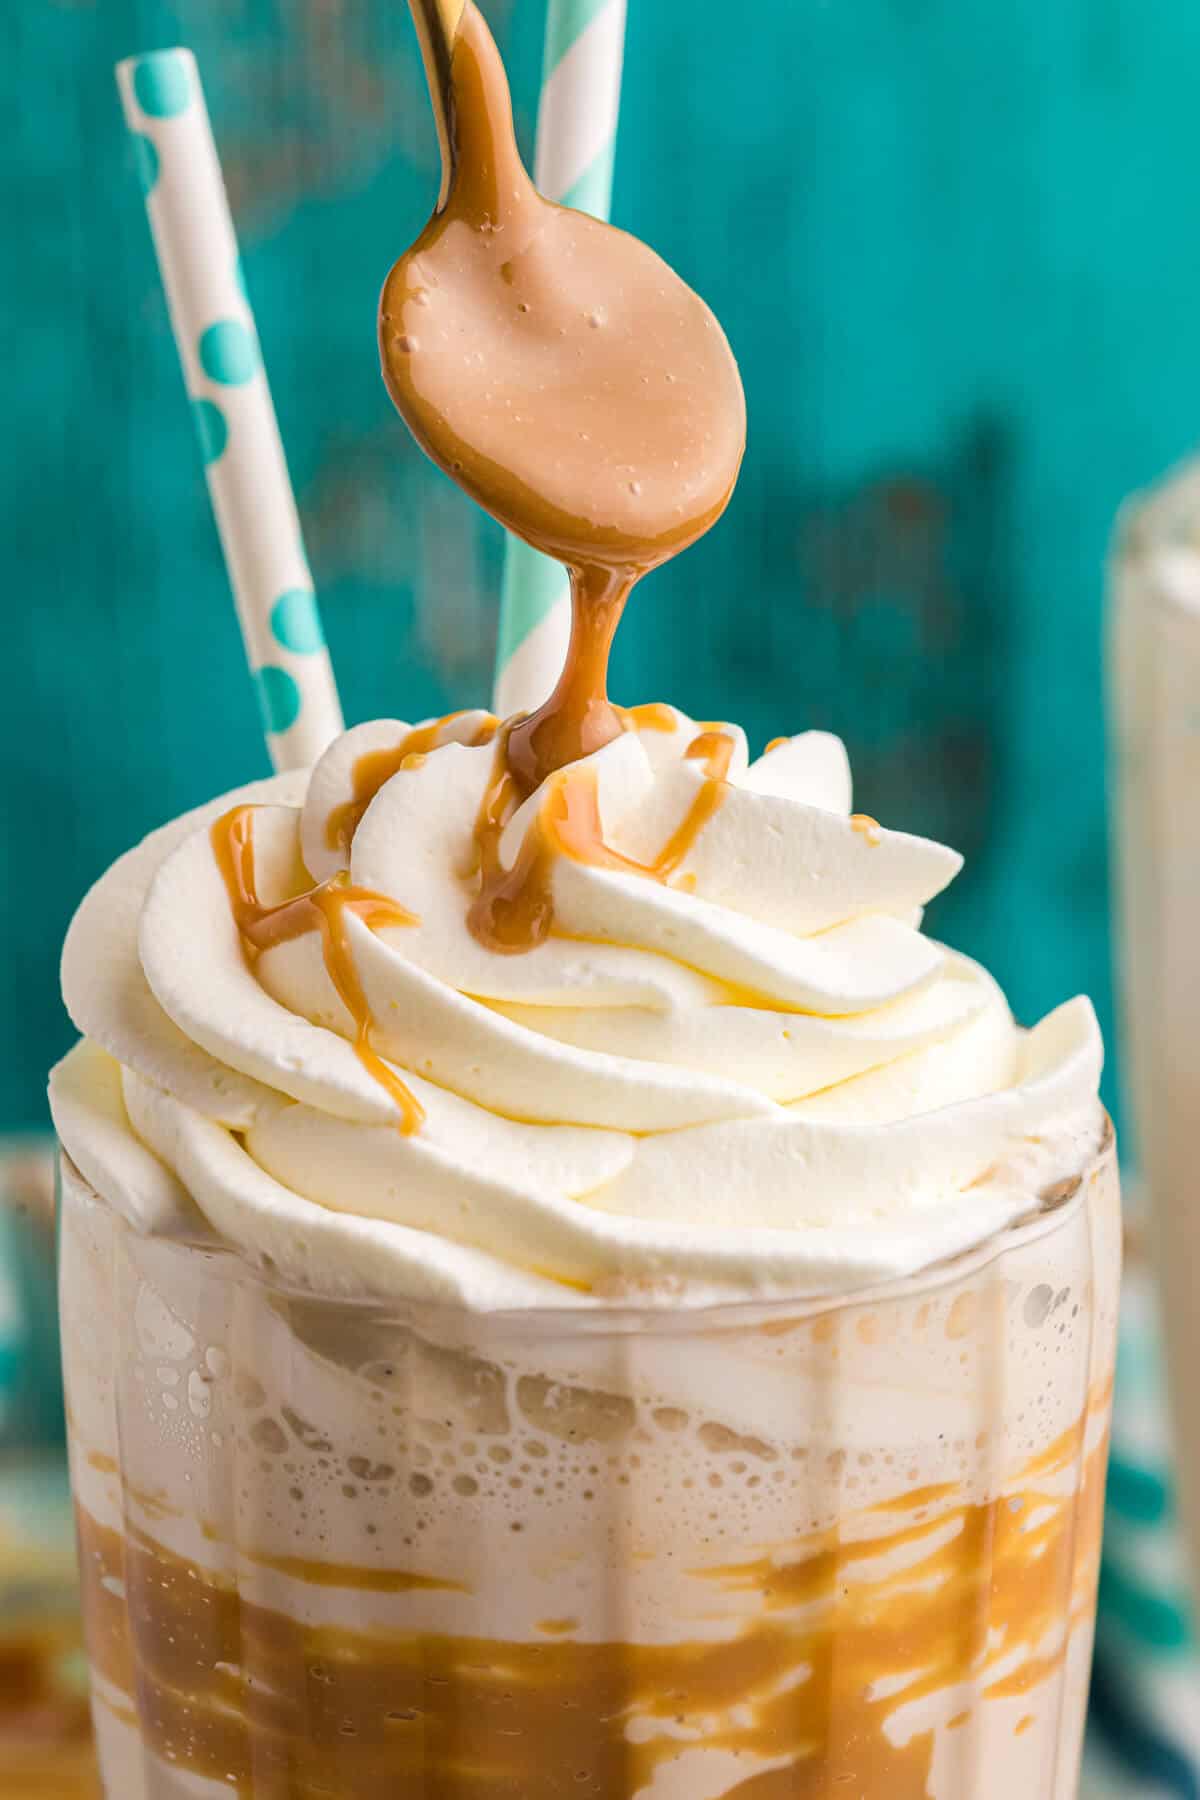 A spoon drizzling dulce de leche on a coffee milkshake.